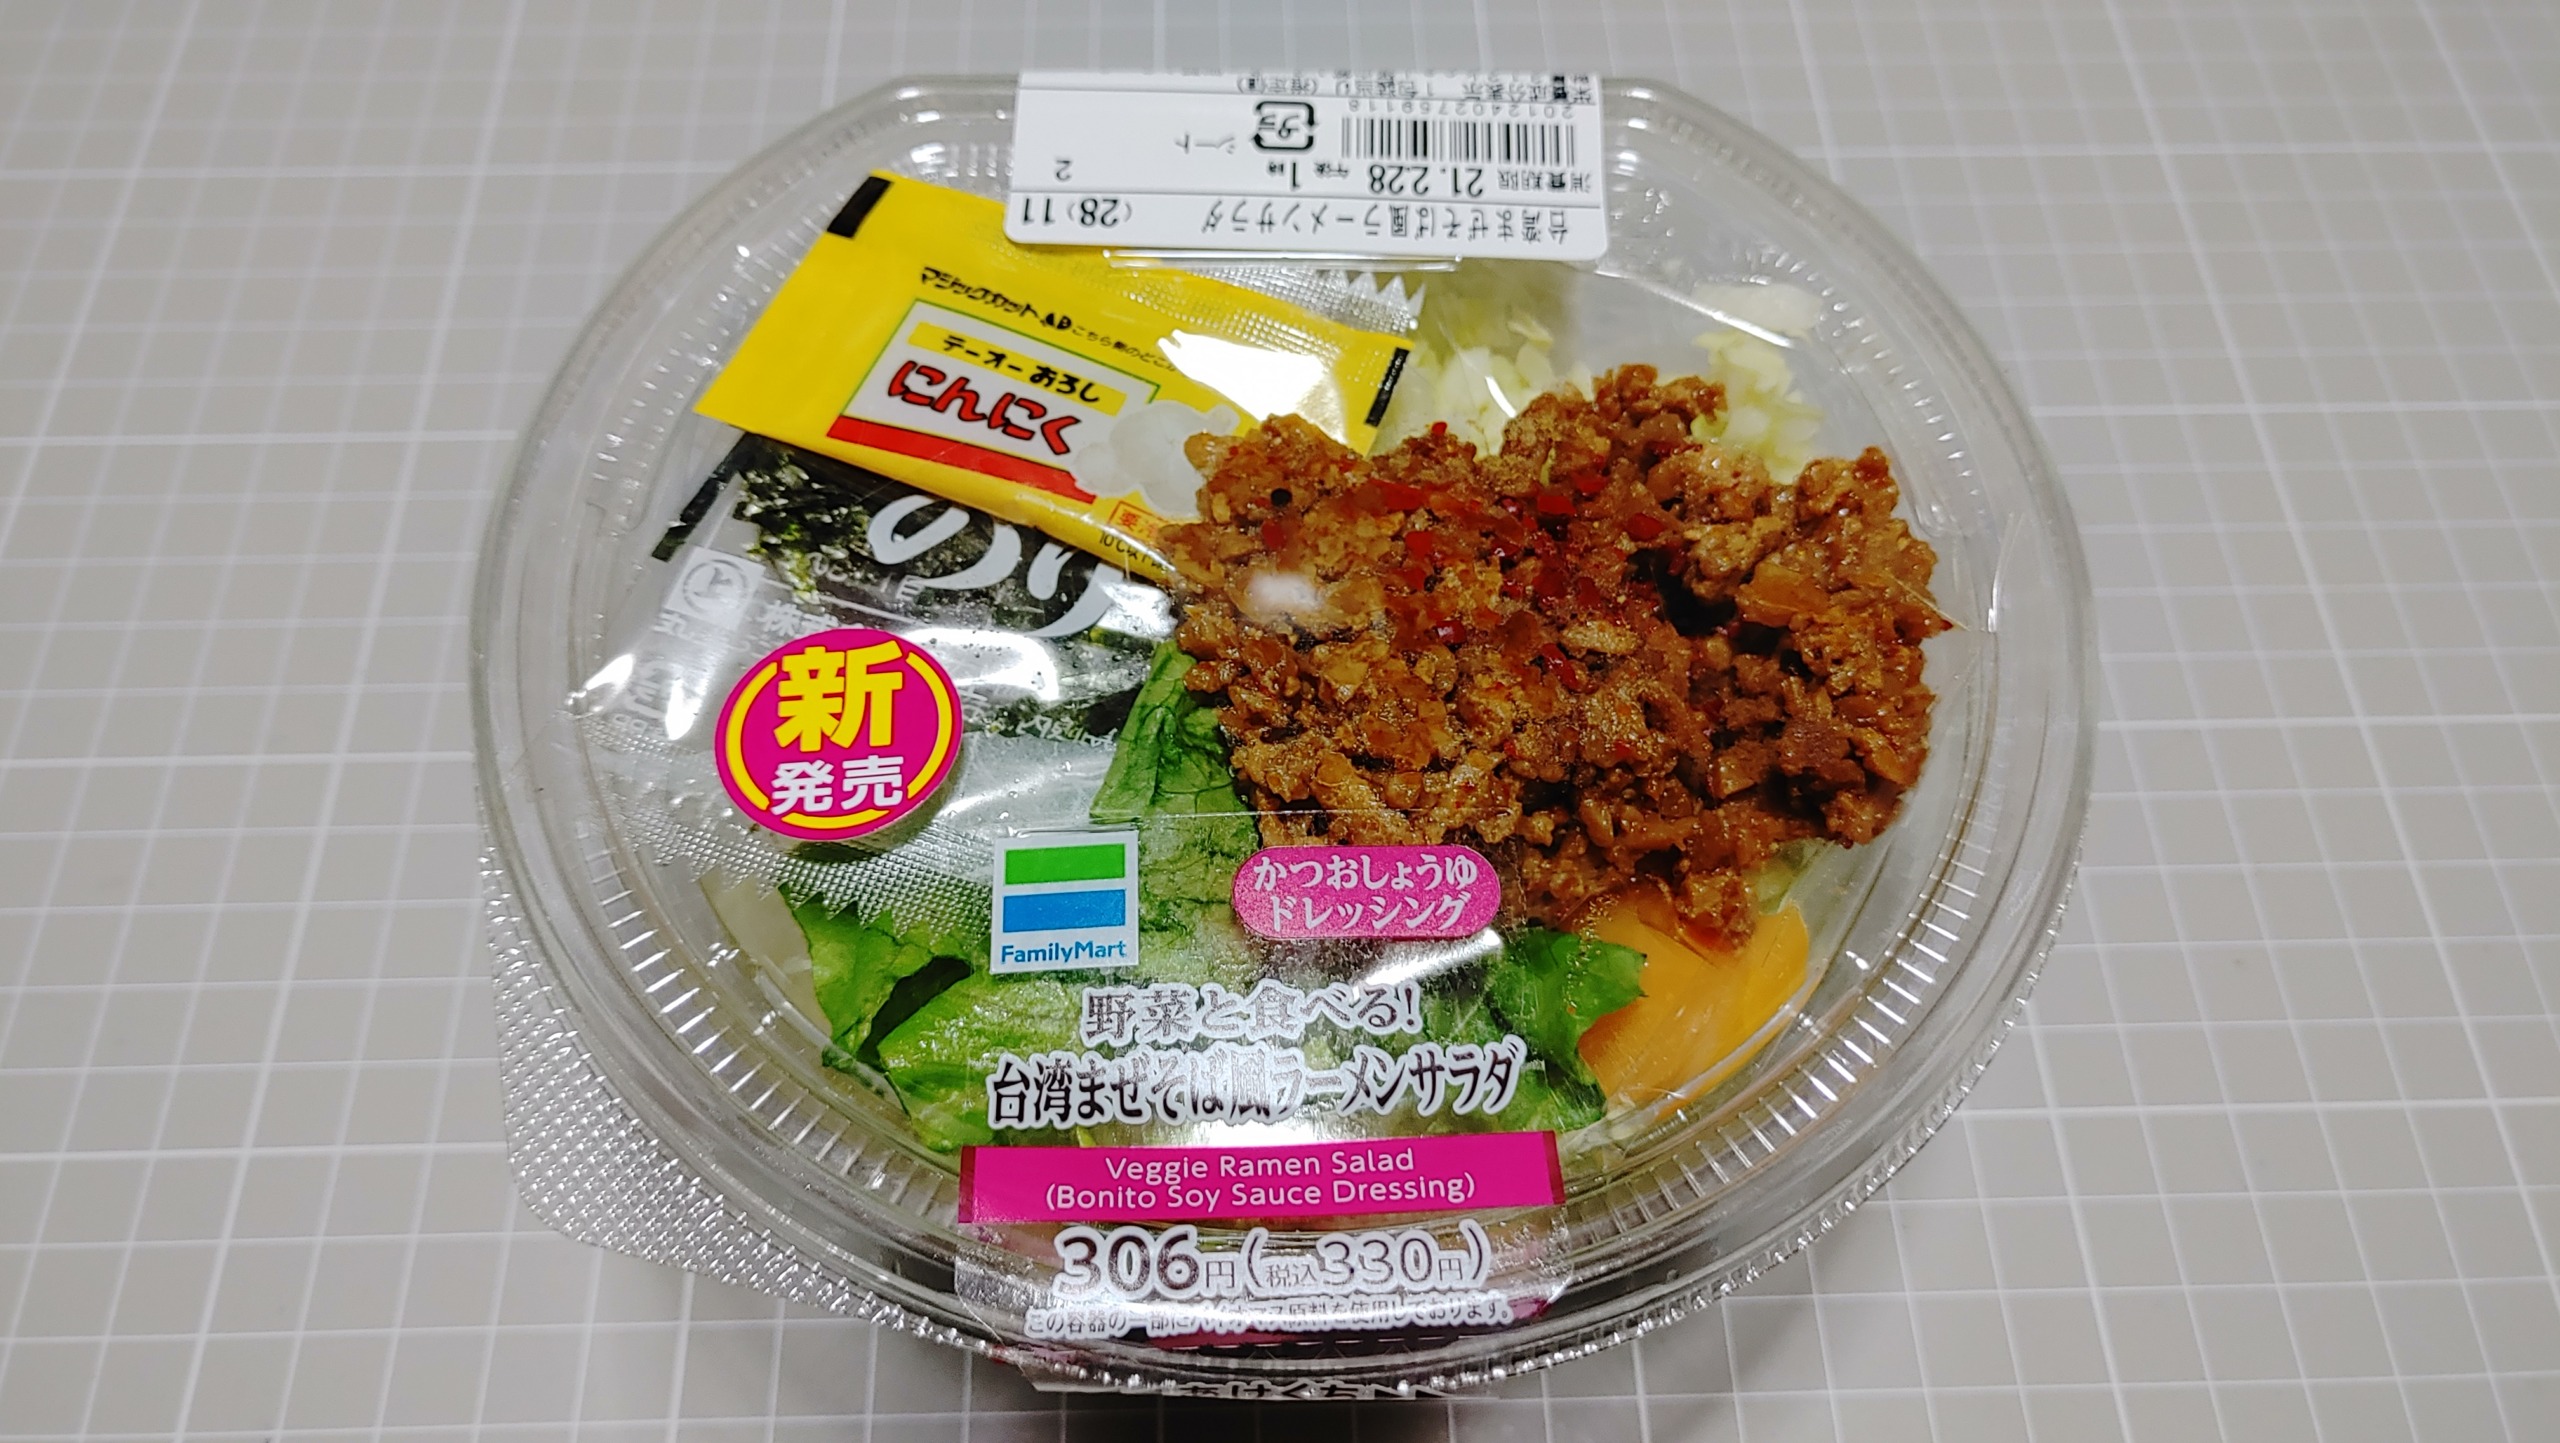 ファミリーマート 野菜と食べる台湾まぜそば風ラーメンサラダ